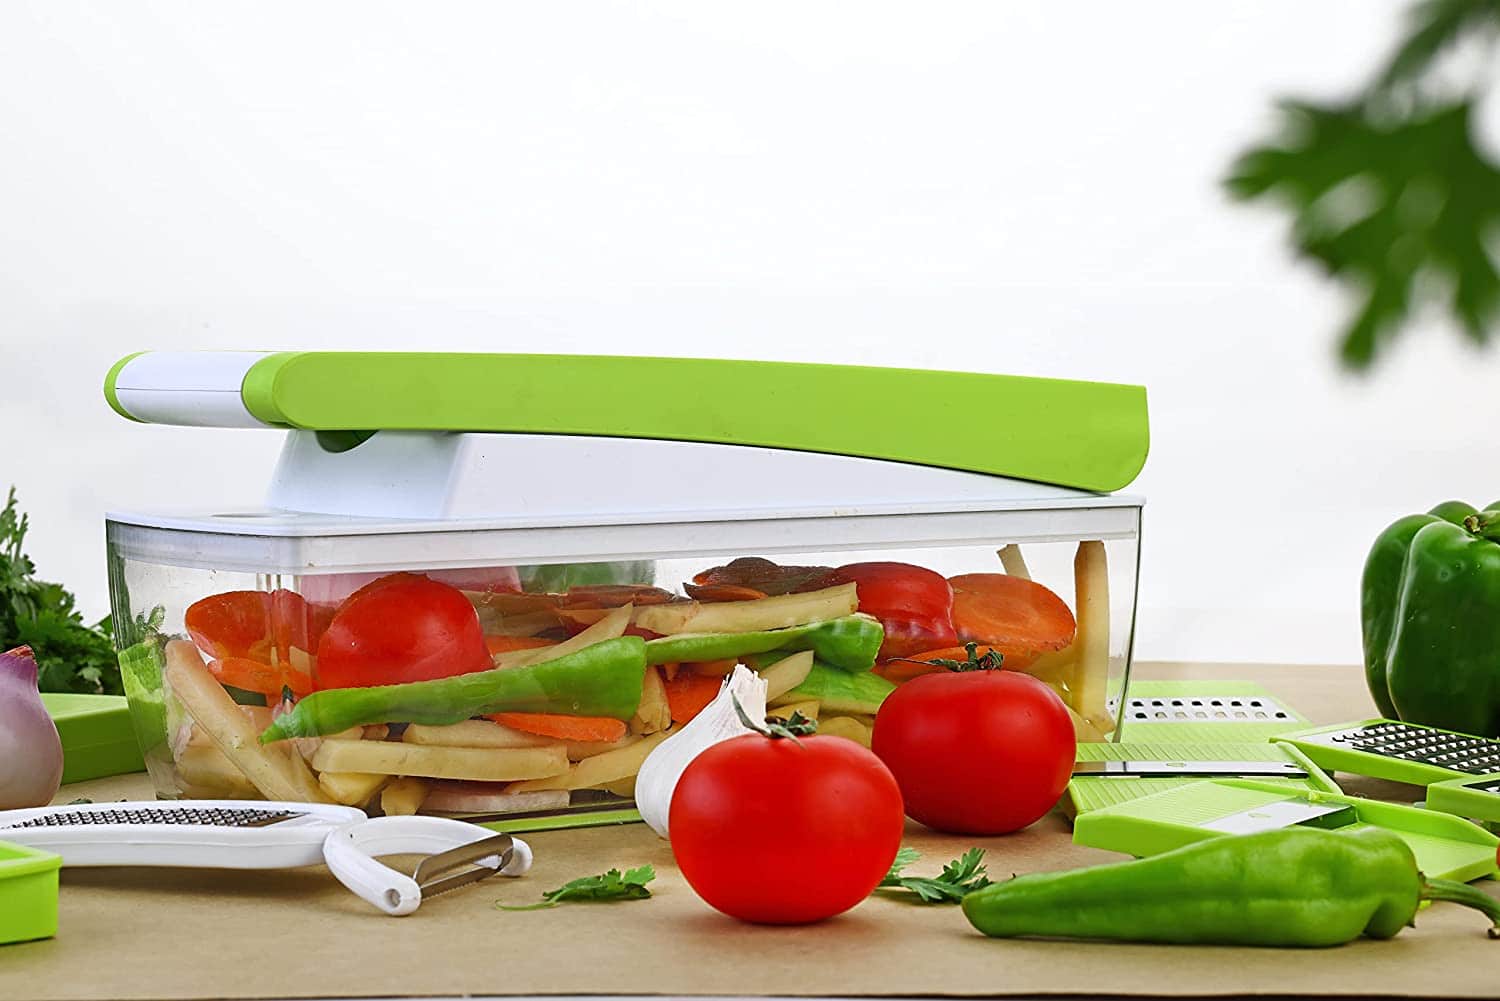 Plastic Multipurpose Vegetable and Fruit Chopper Cutter Grater Slicer, Green5